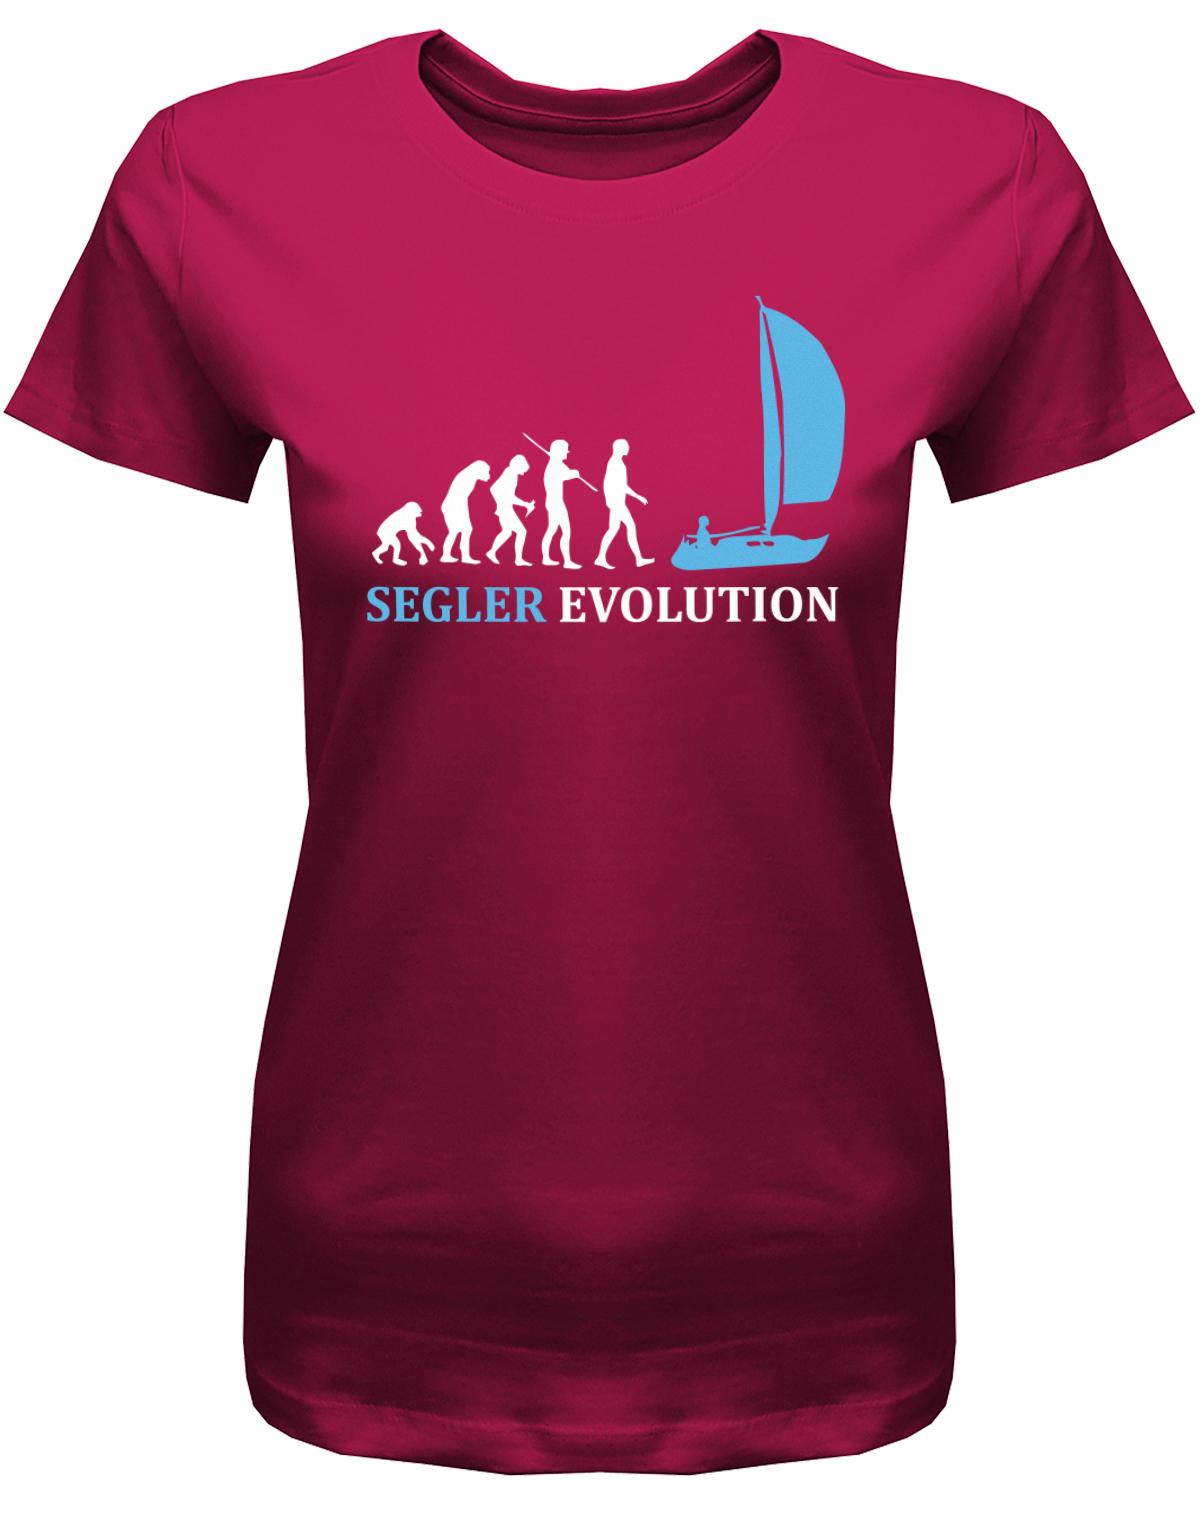 Segler-Evolution-Damen-Shirt-Sorbet